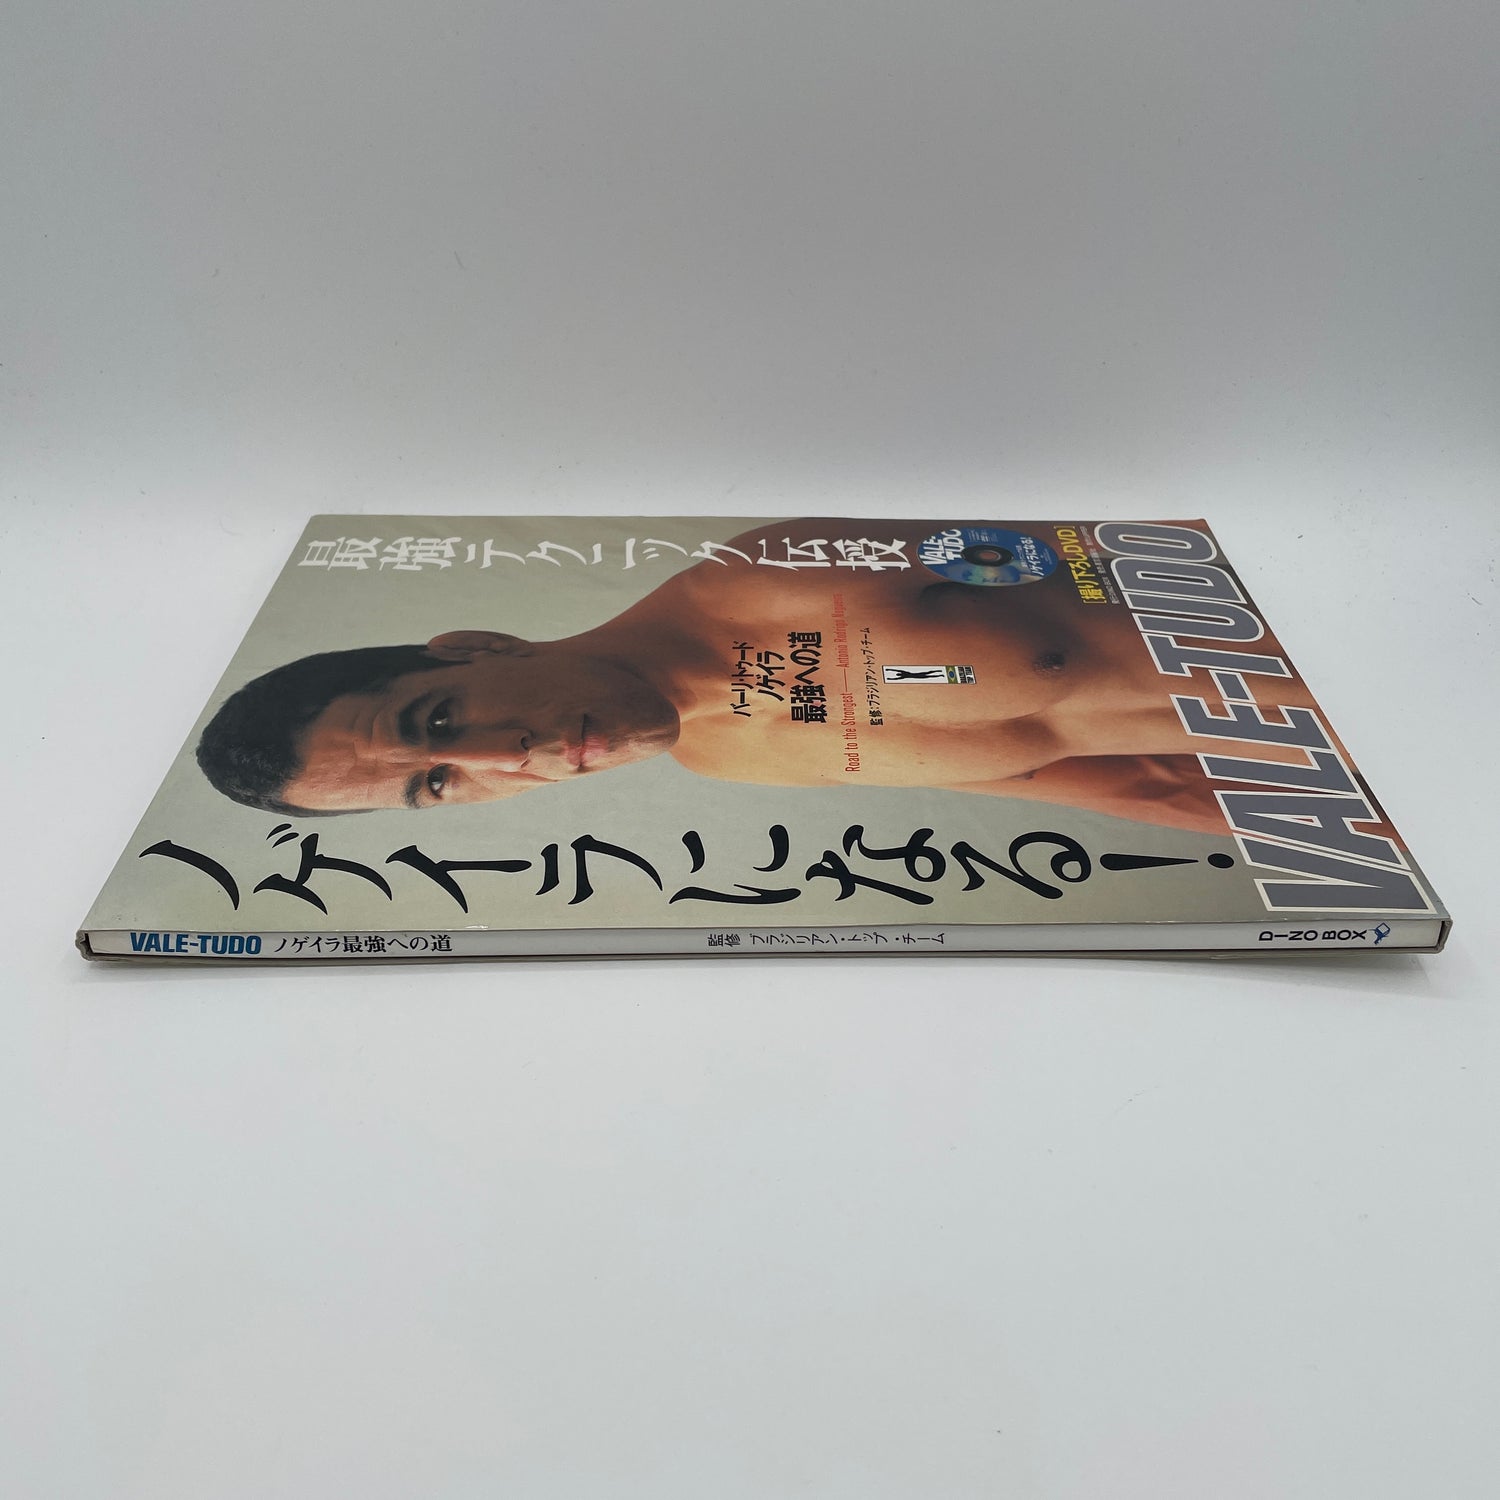 最強への道 ブック&DVD with アントニオ・ロドリゴ・ノゲリア (中古)